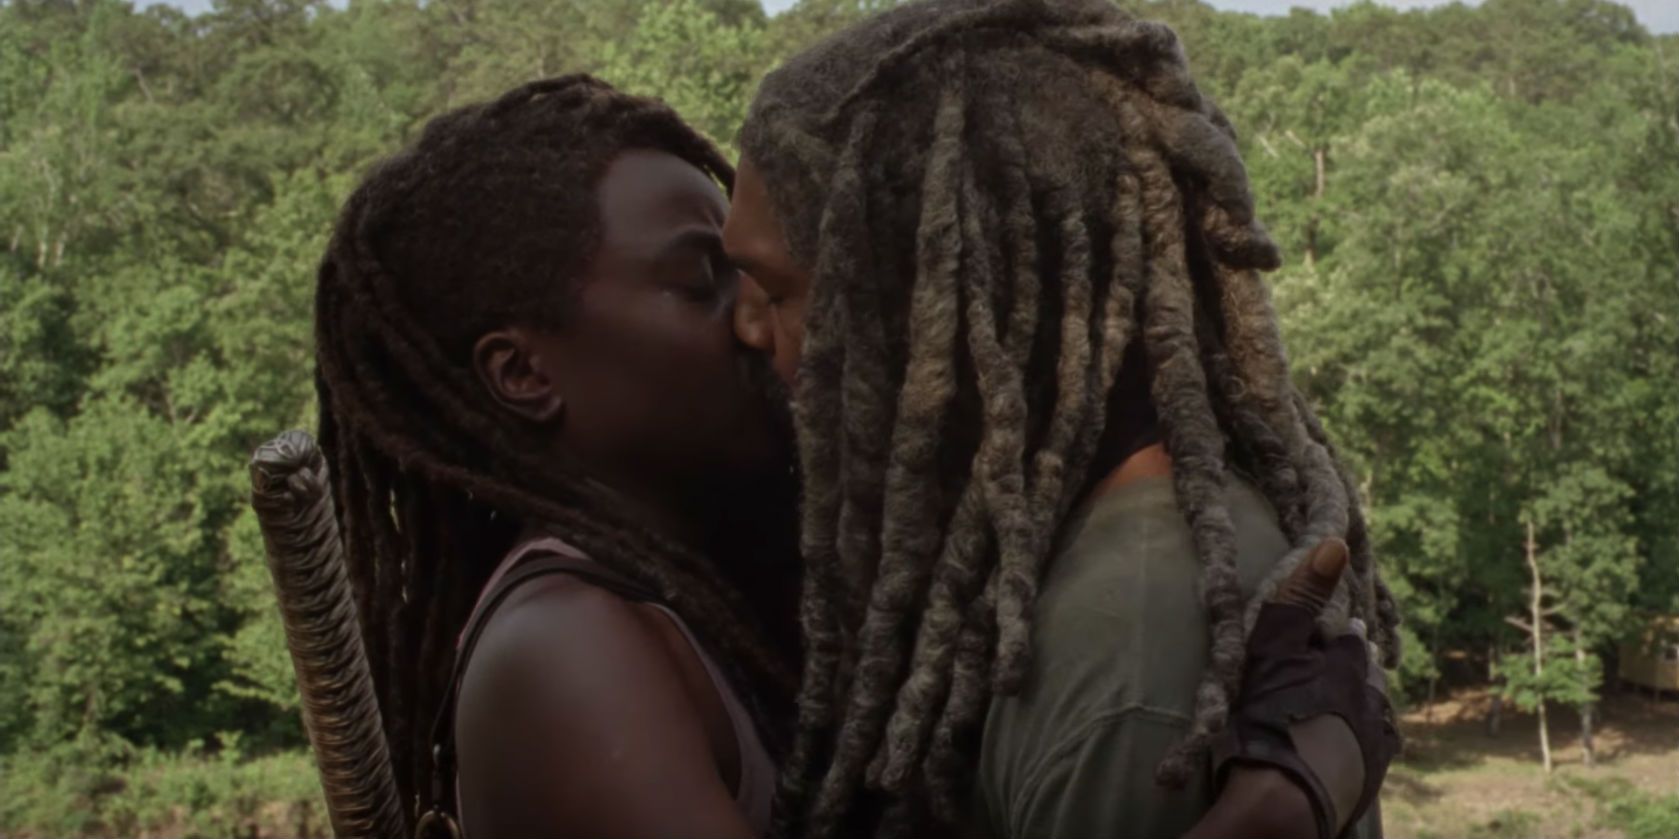 Michonne and Ezekiel kiss in The Walking Dead season 10 trailer